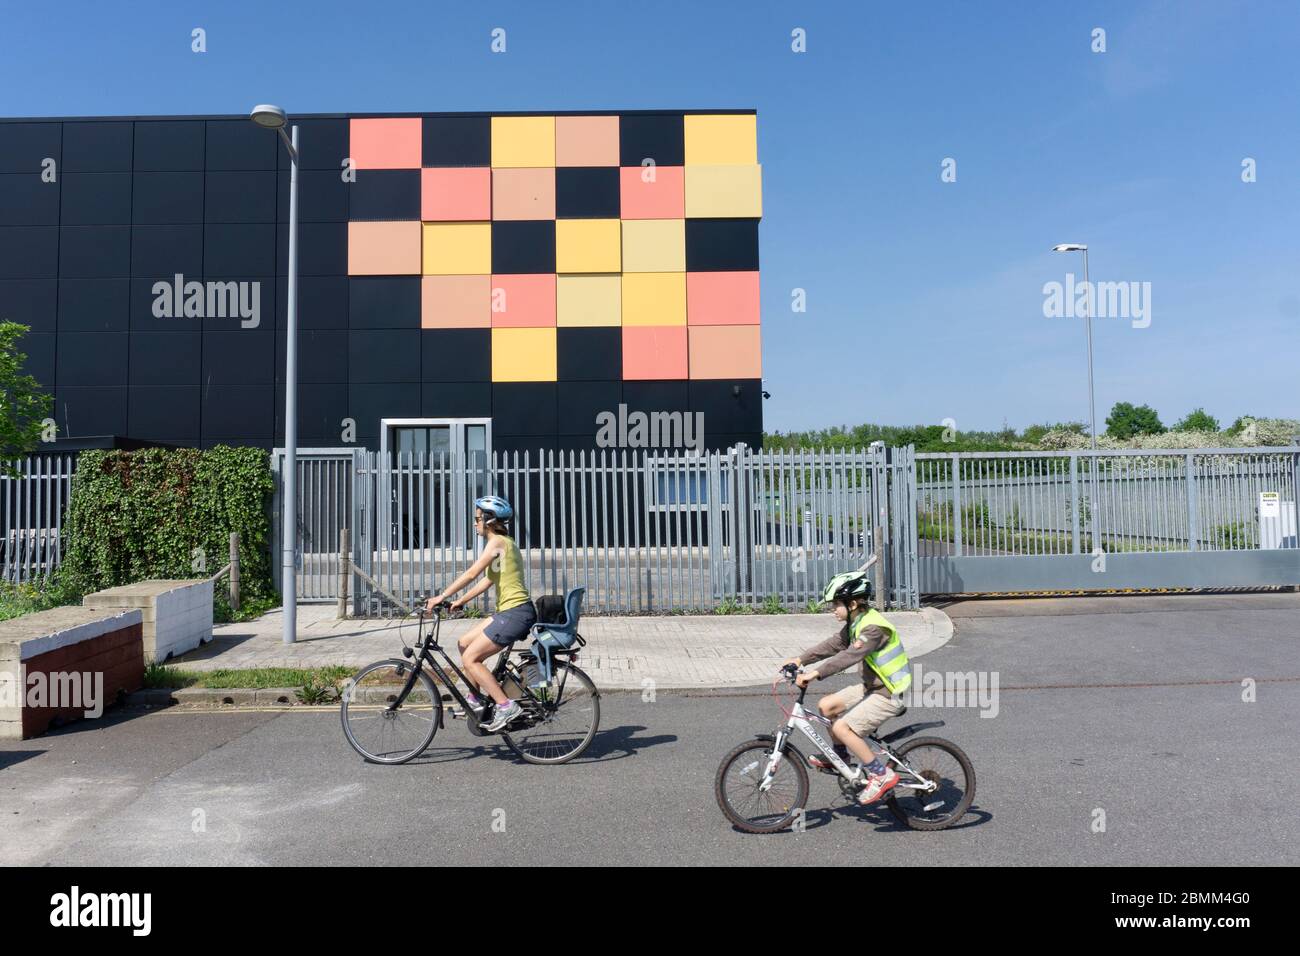 Edificio cúbico negro mate con azulejos amarillos y rojos en una esquina como diseño gráfico detrás de barandillas de seguridad de metal centro de datos de cielo azul intenso Foto de stock